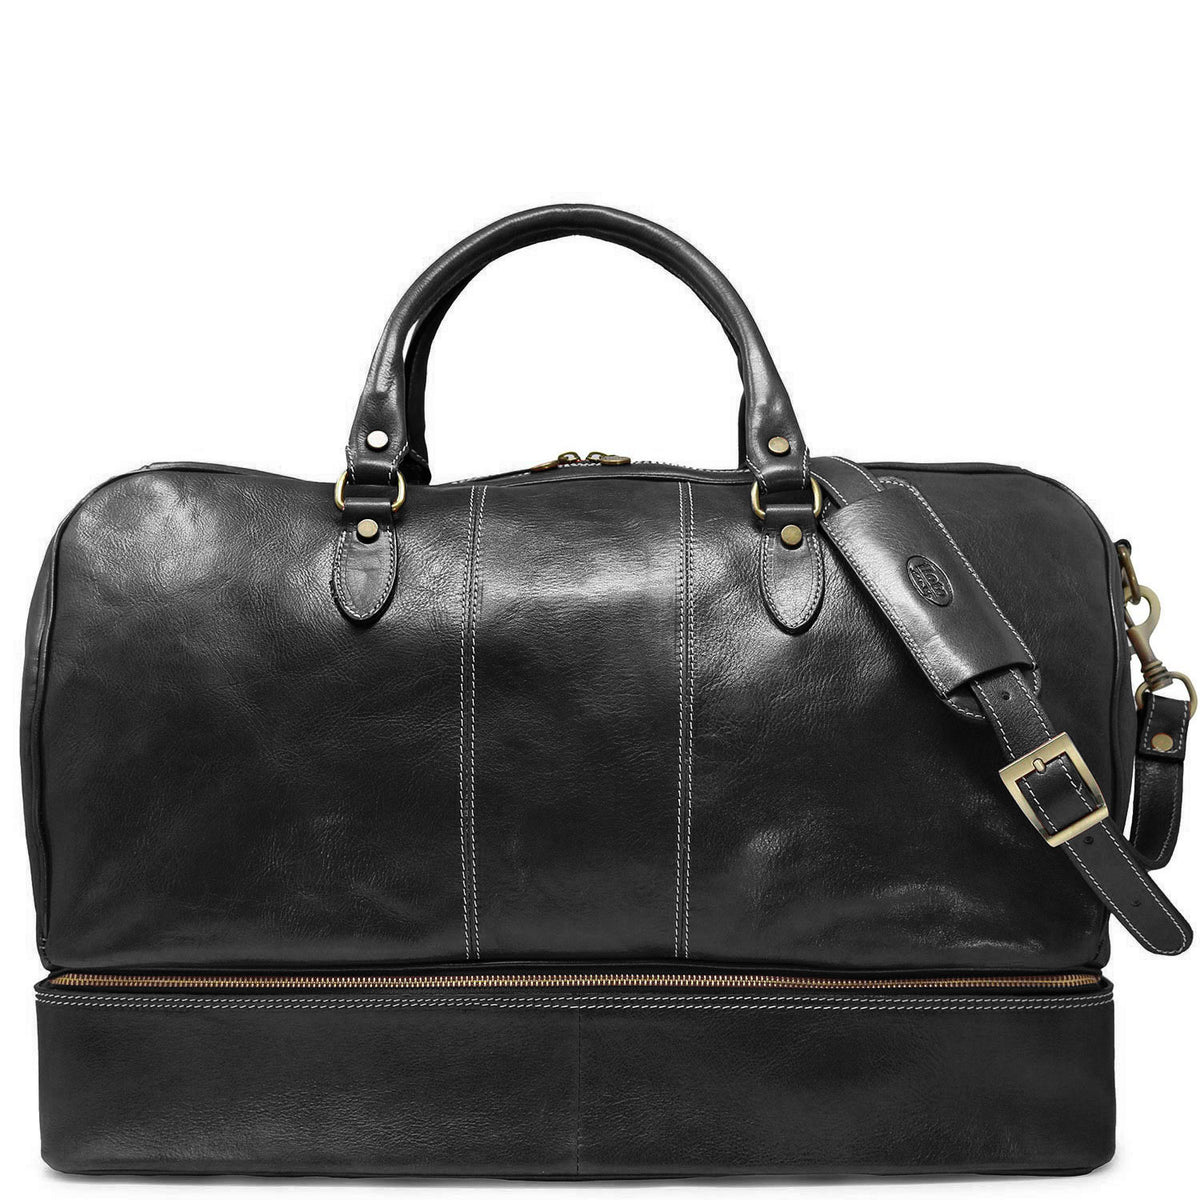 Floto Venezia Drop Bottom Italian Leather Duffle Bag Suitcase